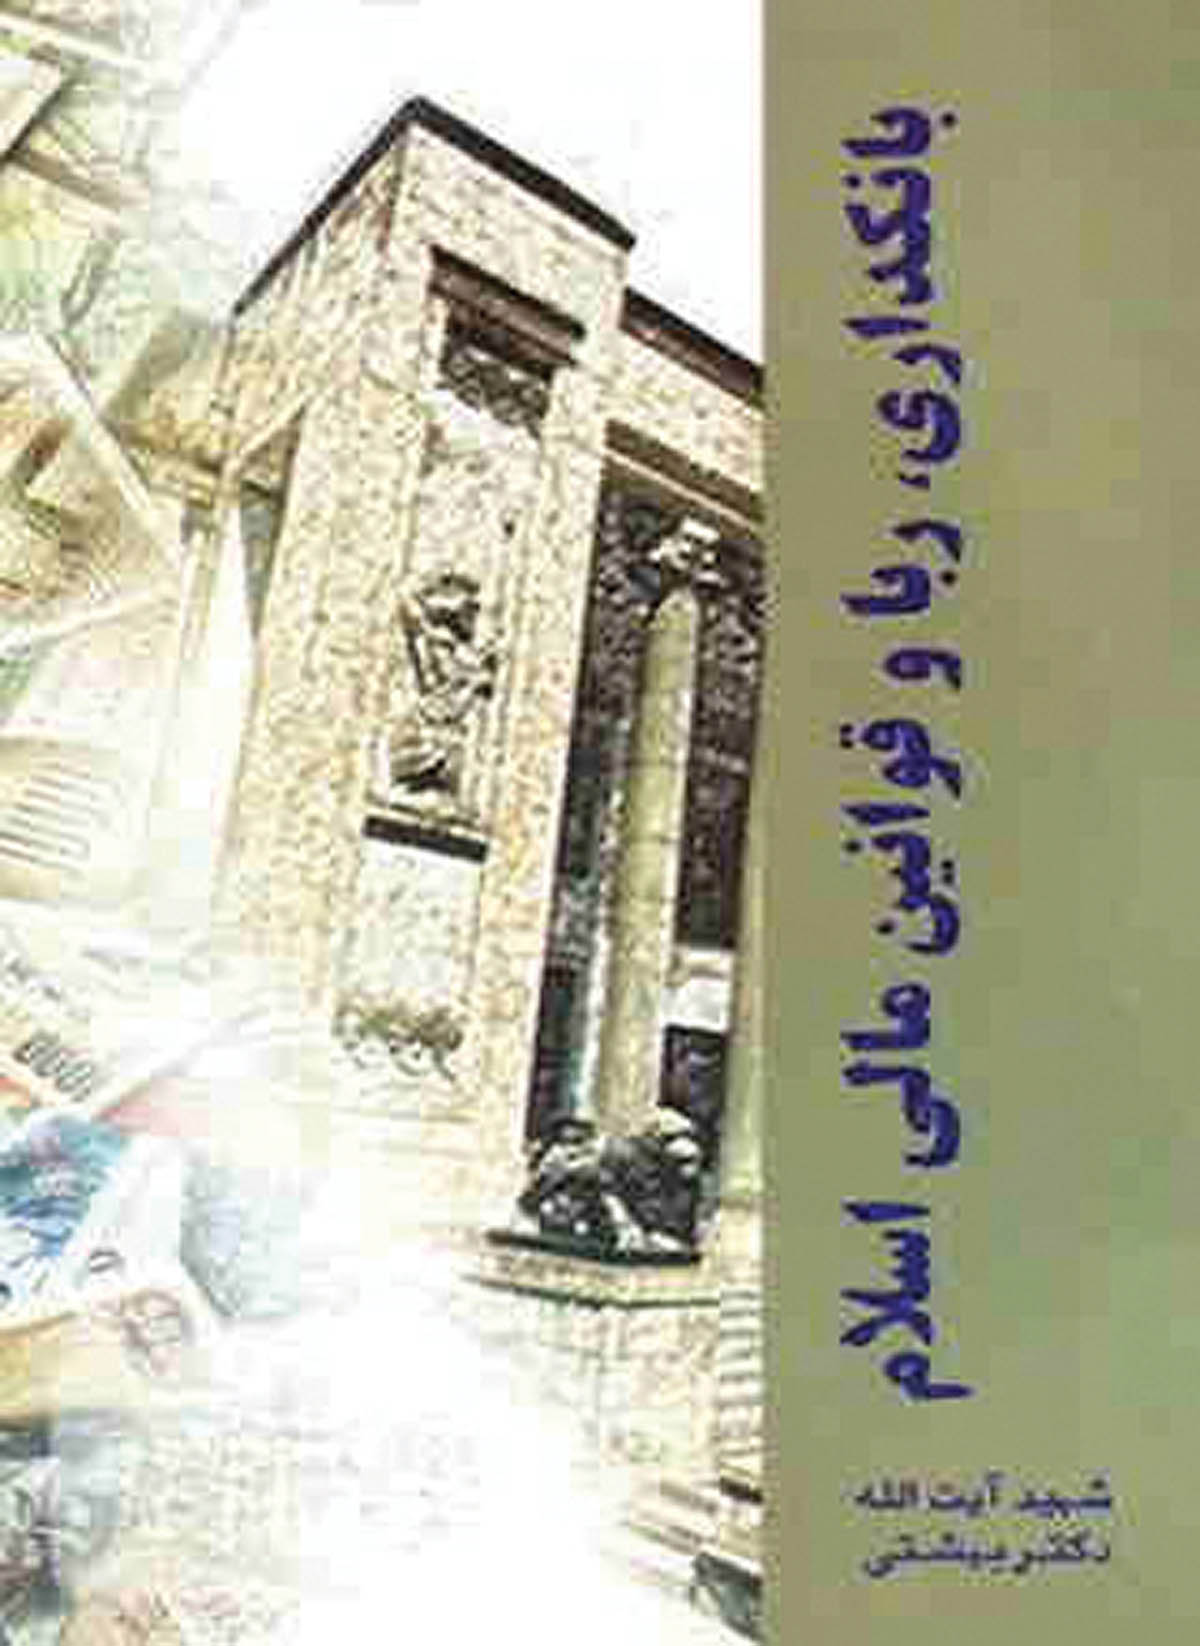 معرفی کتاب بانکداری بدون ربا و قوانین مالی اسلام اثر محمد بهشتی